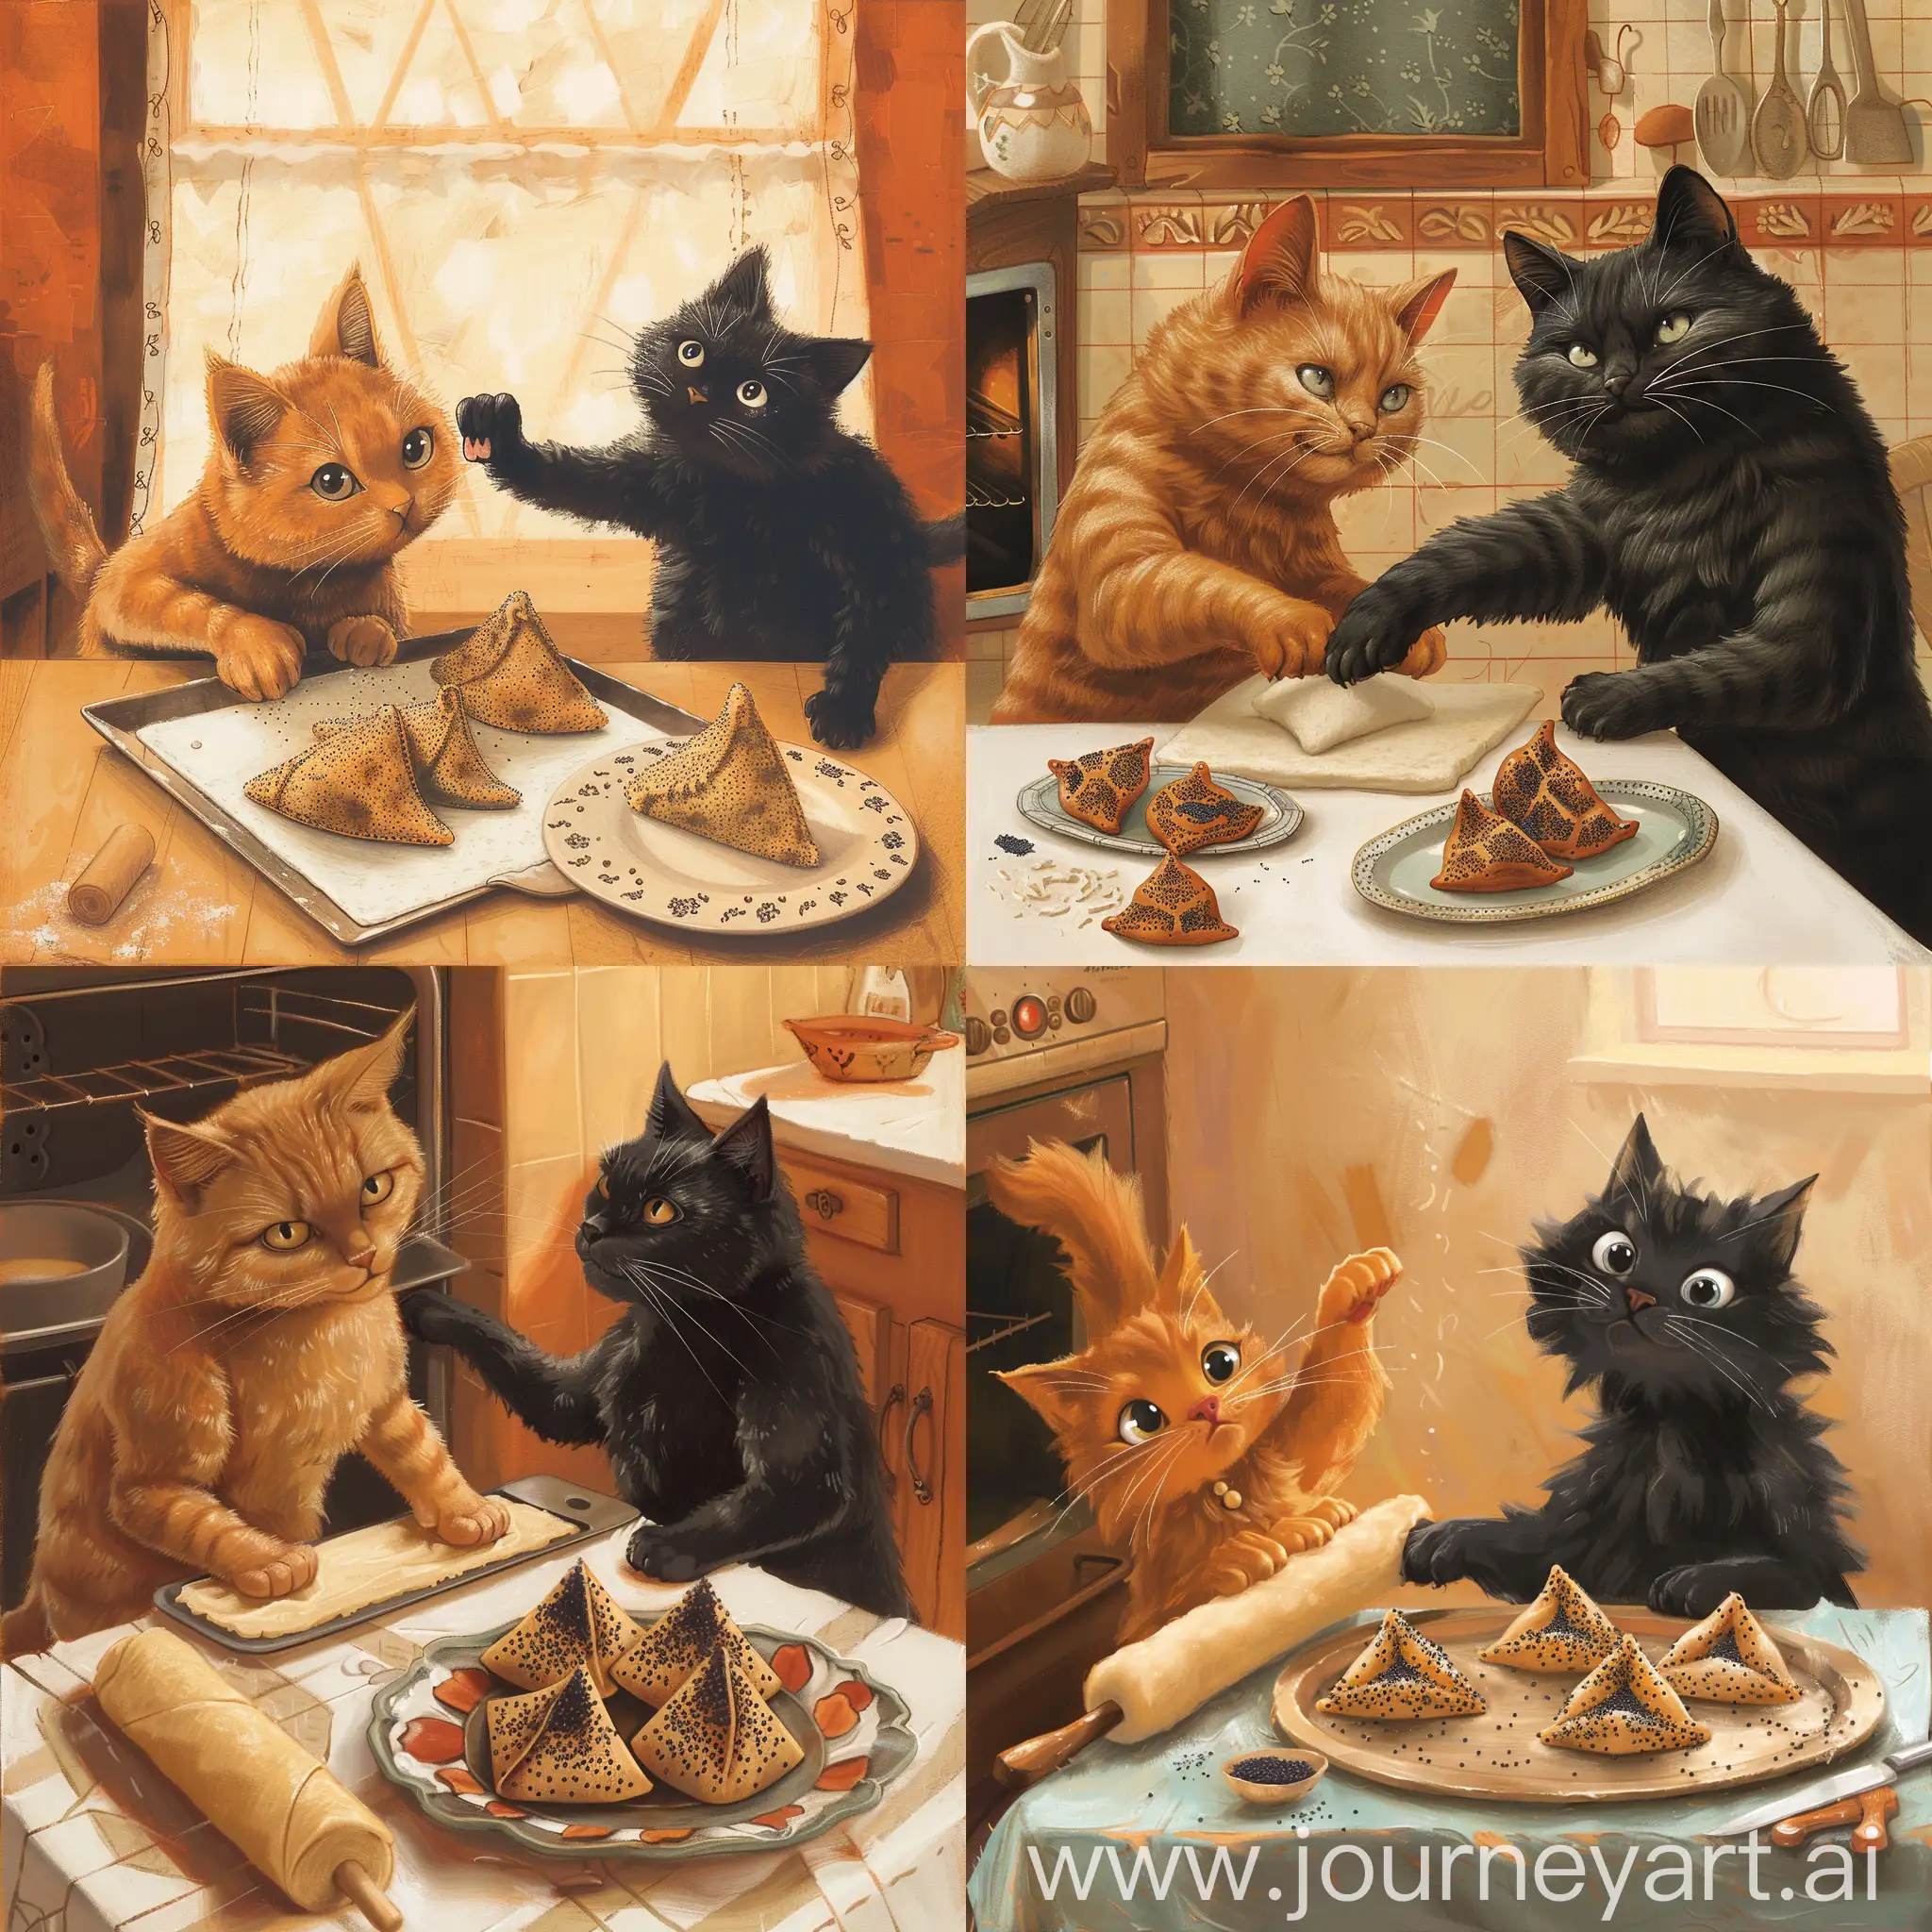 Рыжий кот раскатывает тесто, а черный кот вынимает из духовки противень, на котором лежат готовые печенья ГОМЕНТАШИ к празднику Пурим. На столе лежат на блюде готовые треугольные печенья я маком гоменташи.